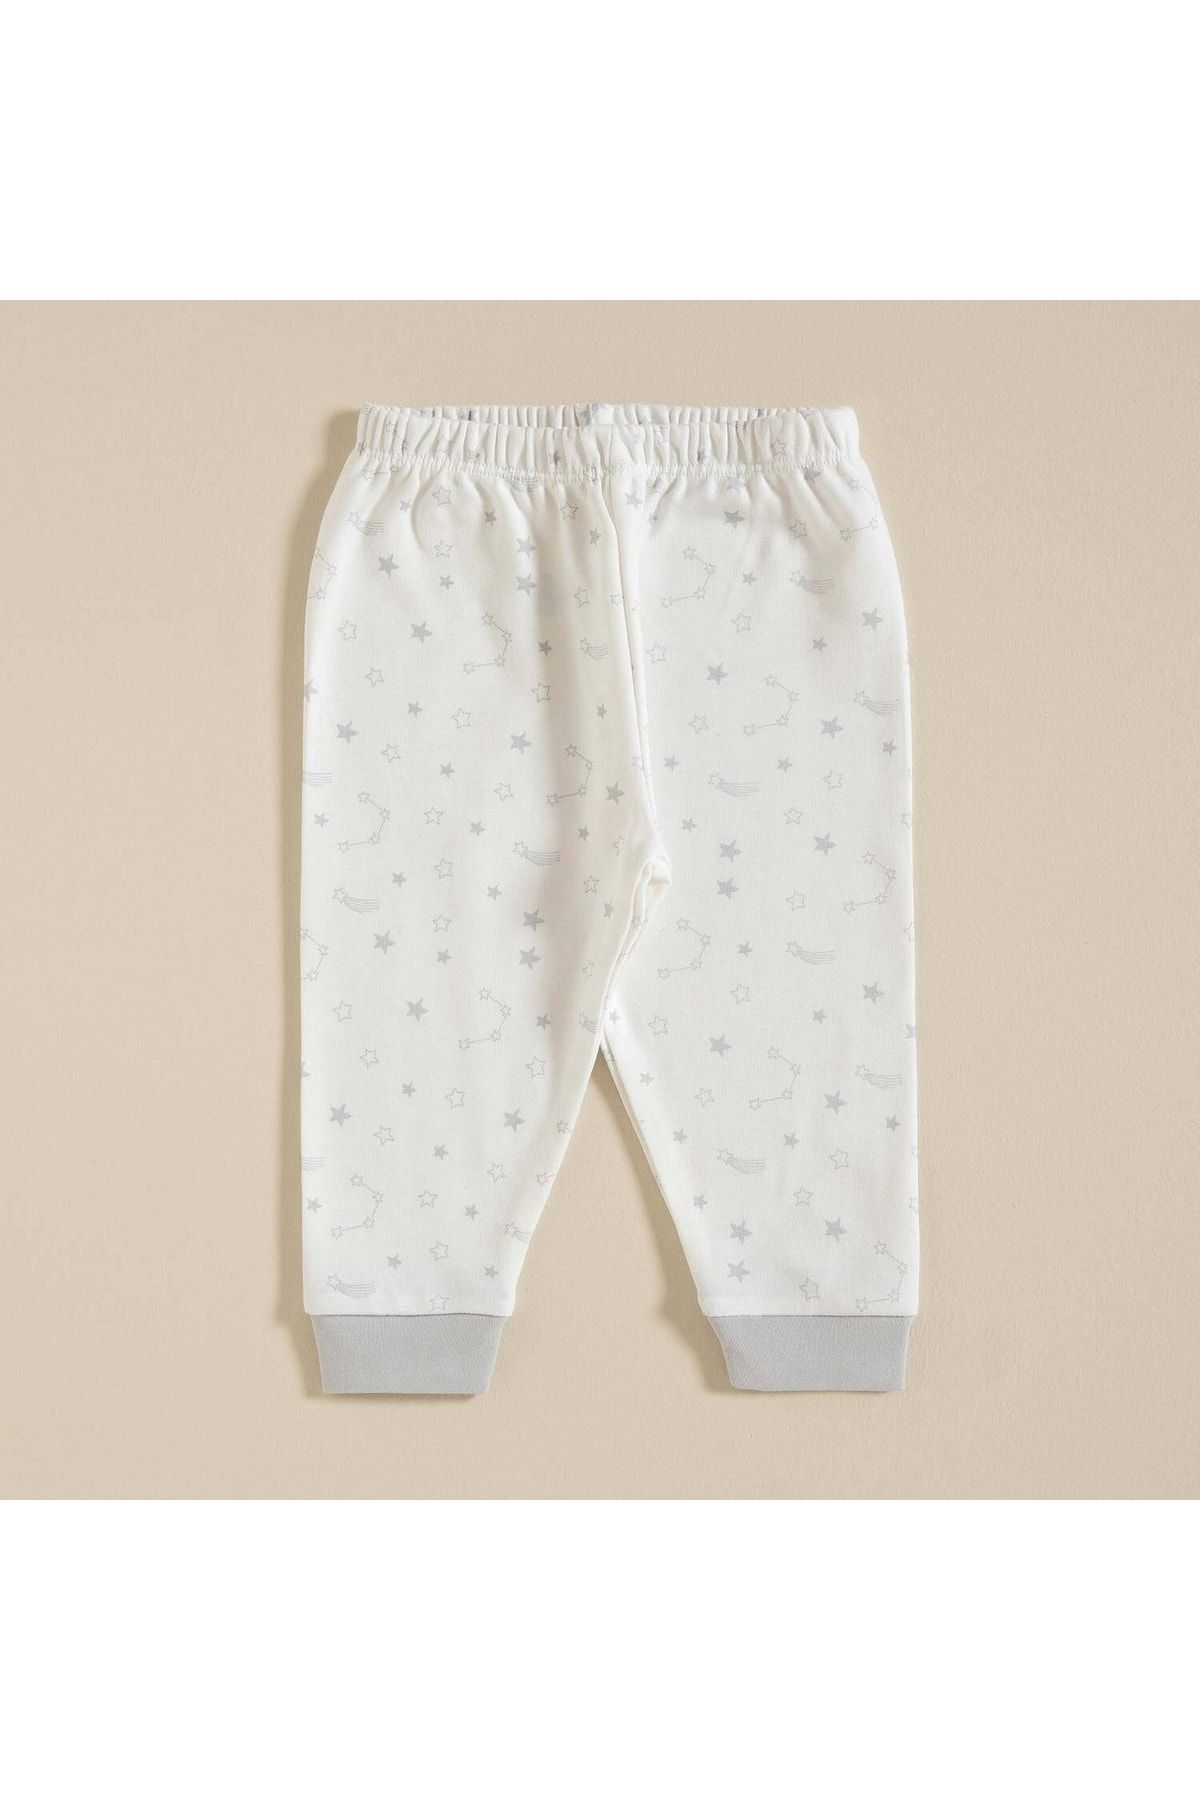 Chakra Elephant Pijama Altı Beyaz/gri